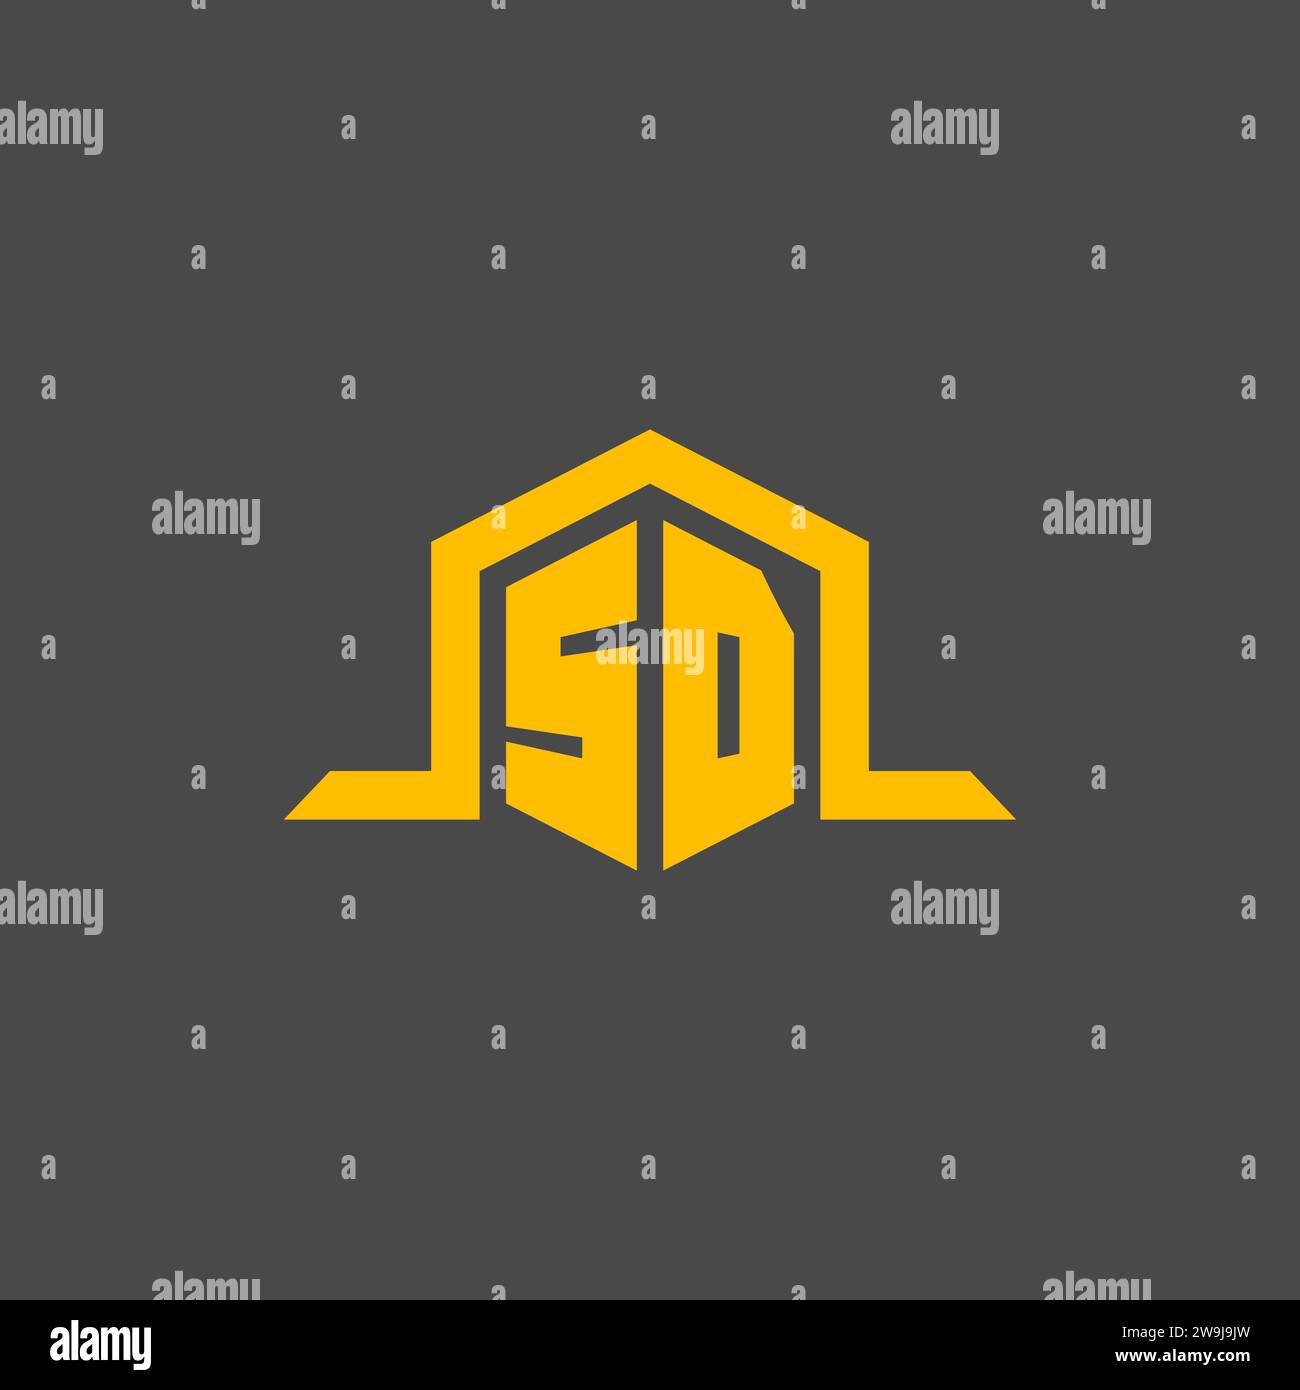 SD monogram initial logo with hexagon style design ideas Stock Vector